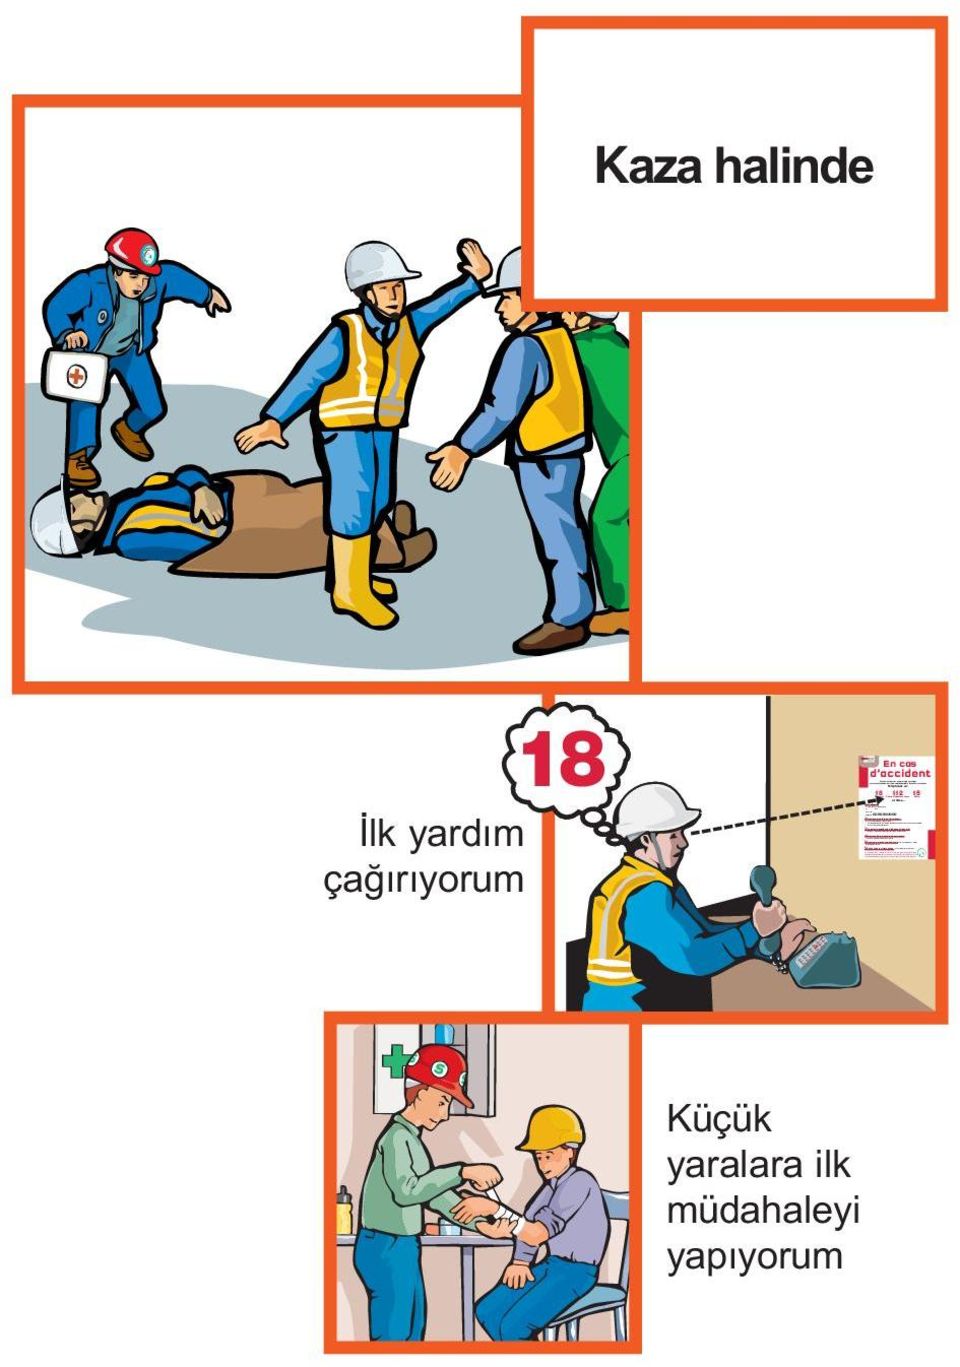 chute ) et la position du blessé (par exemple : le blessé est sur le toit, il est au sol ou dans une fouille ) et s il y a nécessité de dégagement.